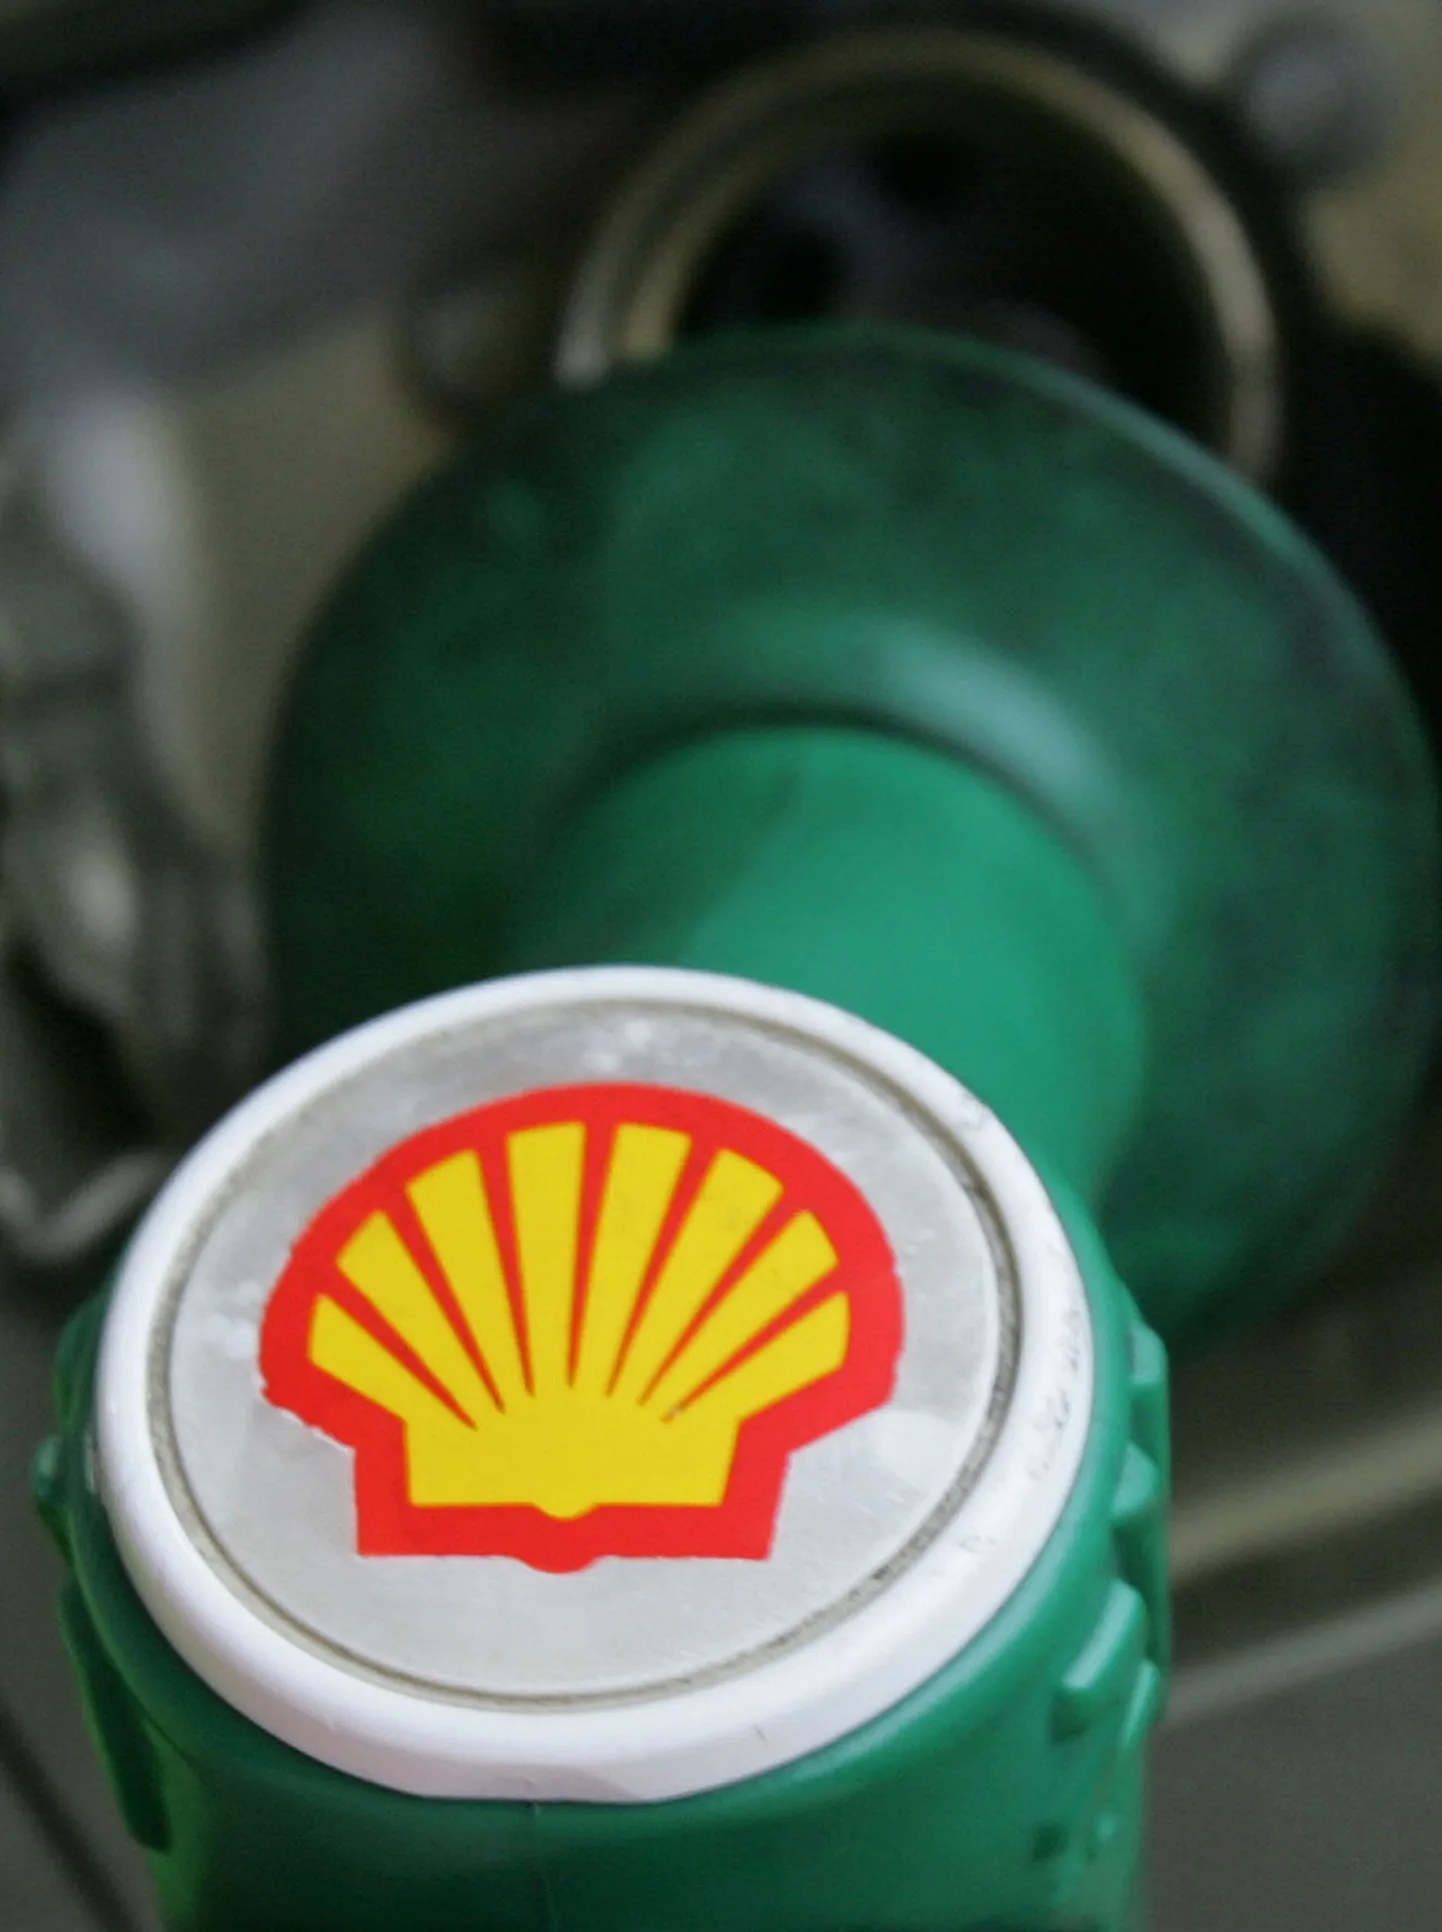 Nigeeria sissid ründasid Shelli naftatoru.